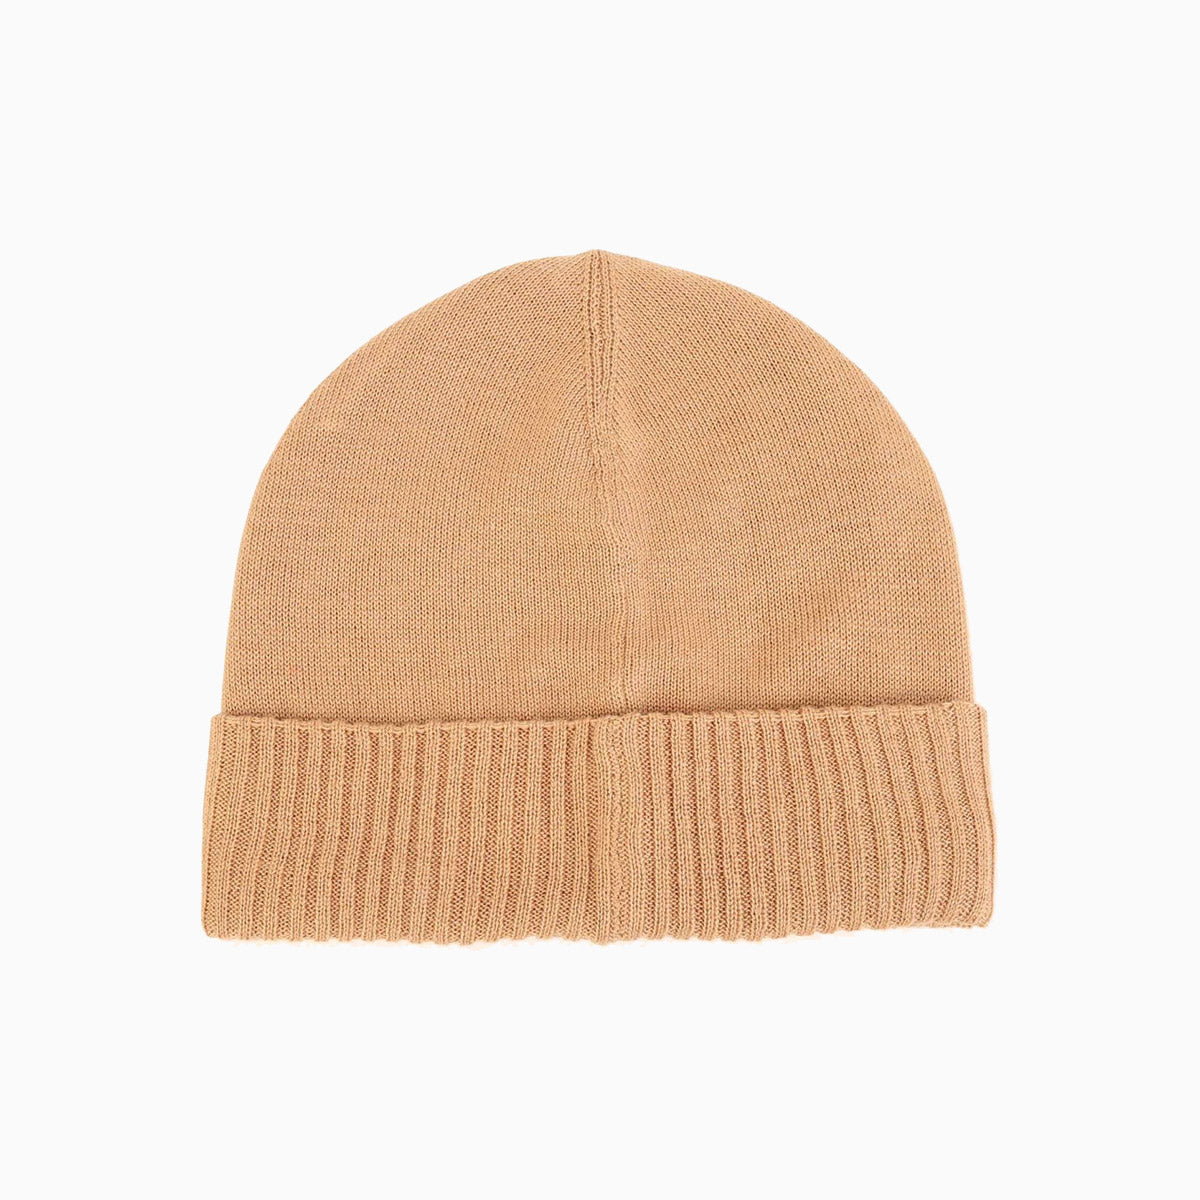 hugo-boss-kids-pull-on-knitted-beanie-hat-j01145-269